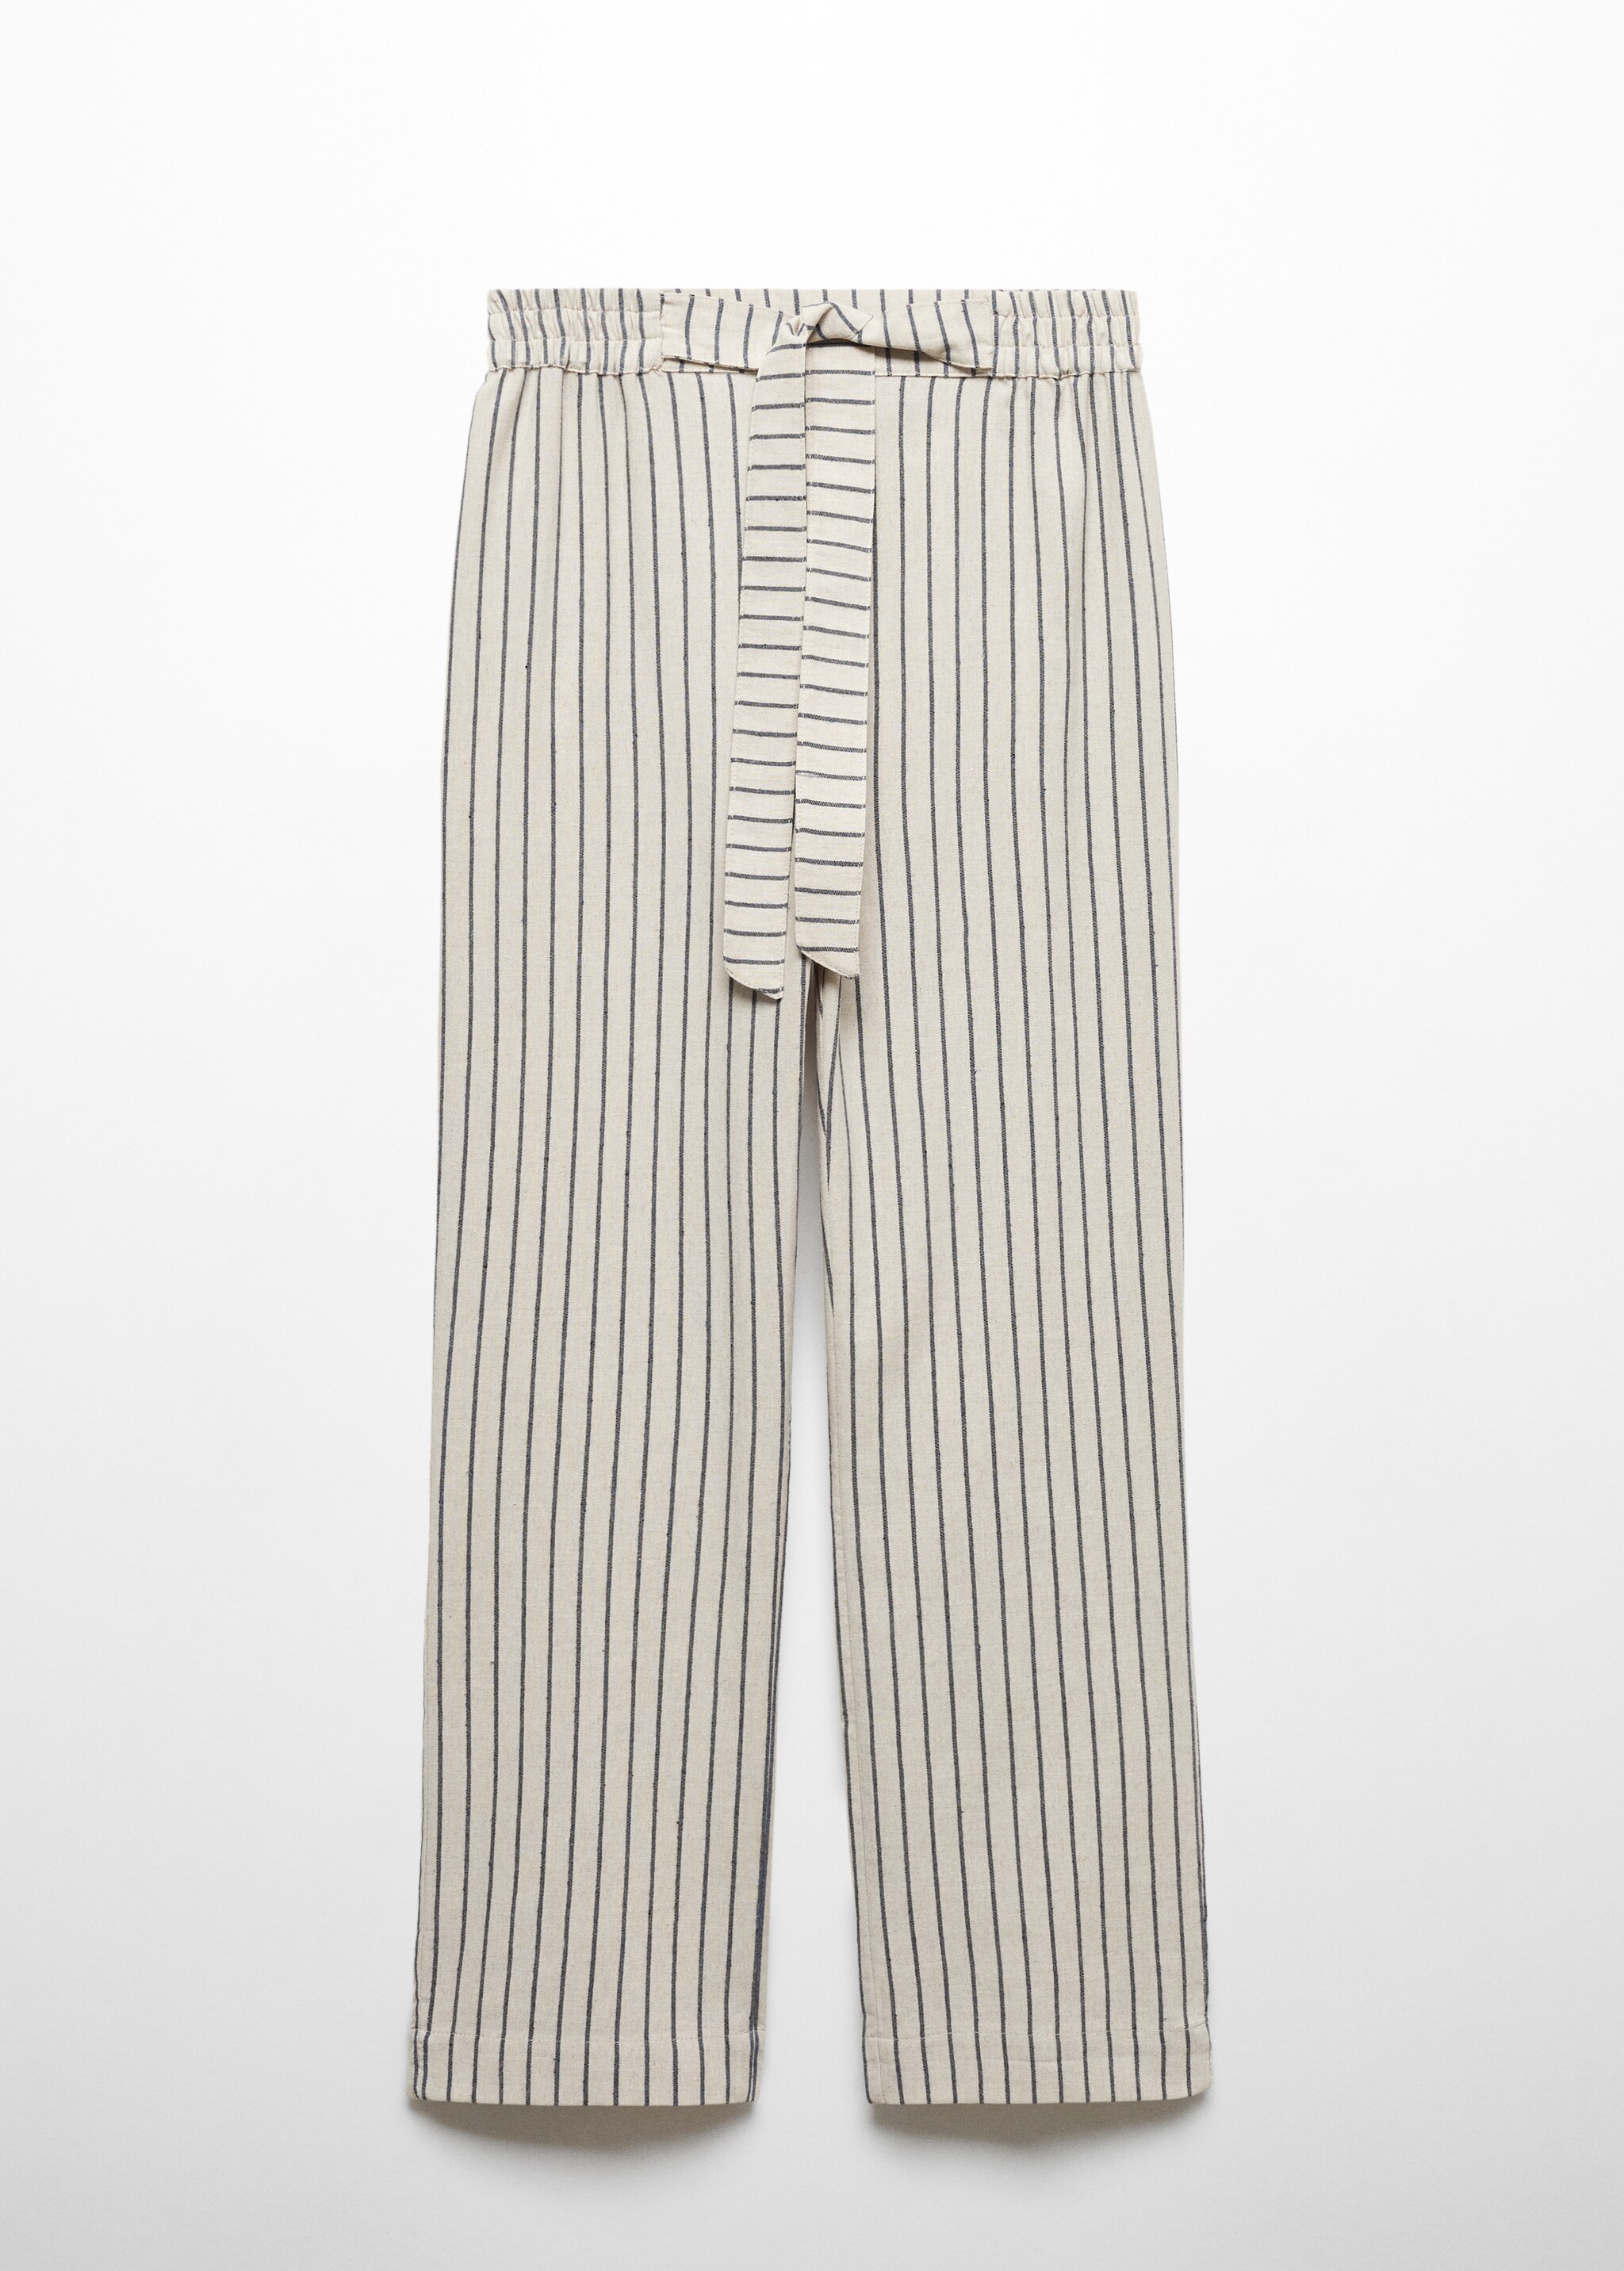 Pantalón pijama rayas - Artículo sin modelo